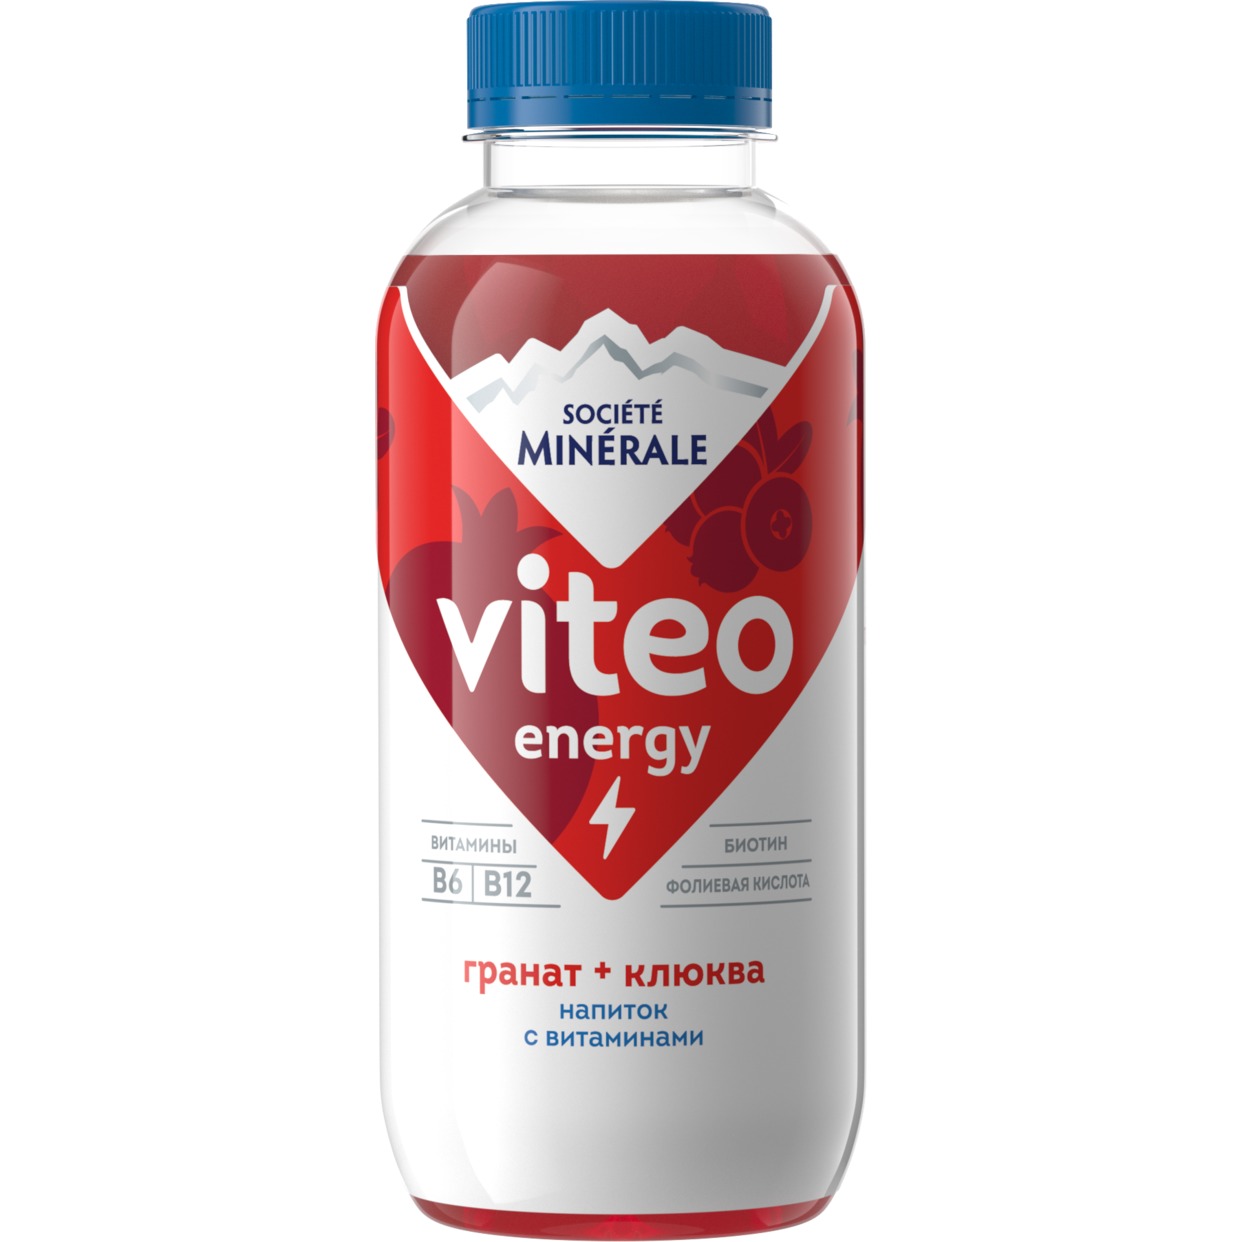 Напиток безалкогольный негазированный торговой марки «Societe Minerale Viteo» с витаминами вкус гранат - клюква 0,4 по акции в Пятерочке